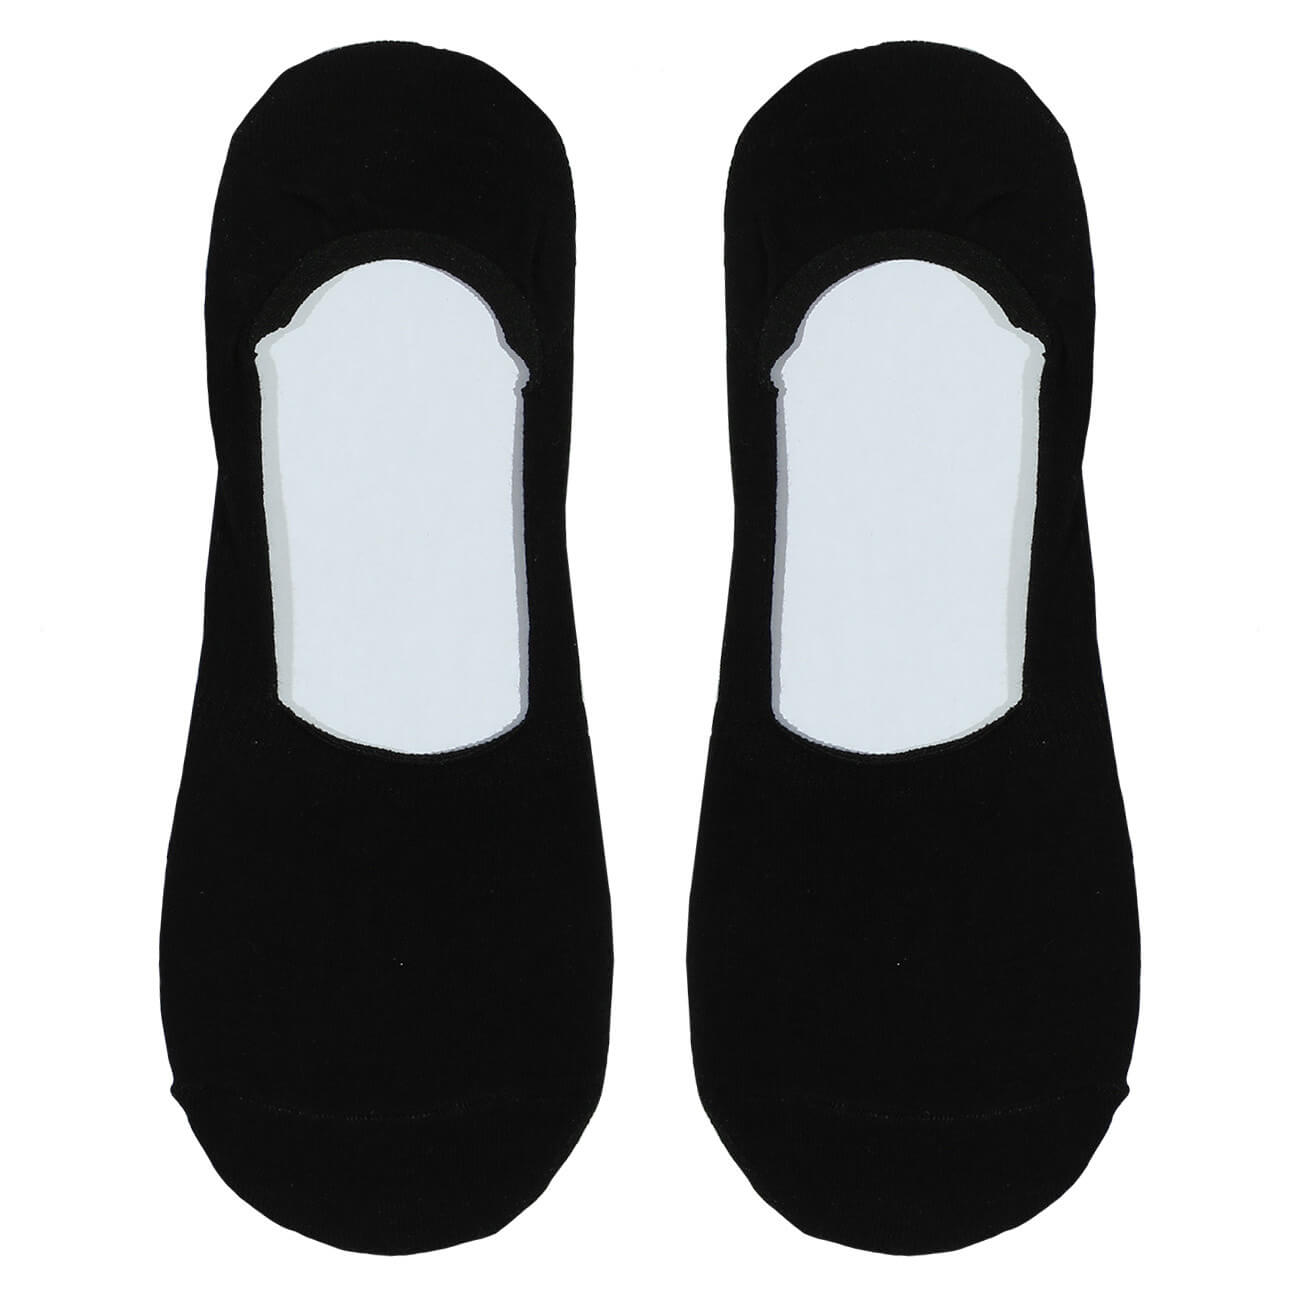 Носки-следки женские, р. 36-38, хлопок/полиэстер, черные, Basic носки женские р 38 41 хлопок полиэстер белые basic